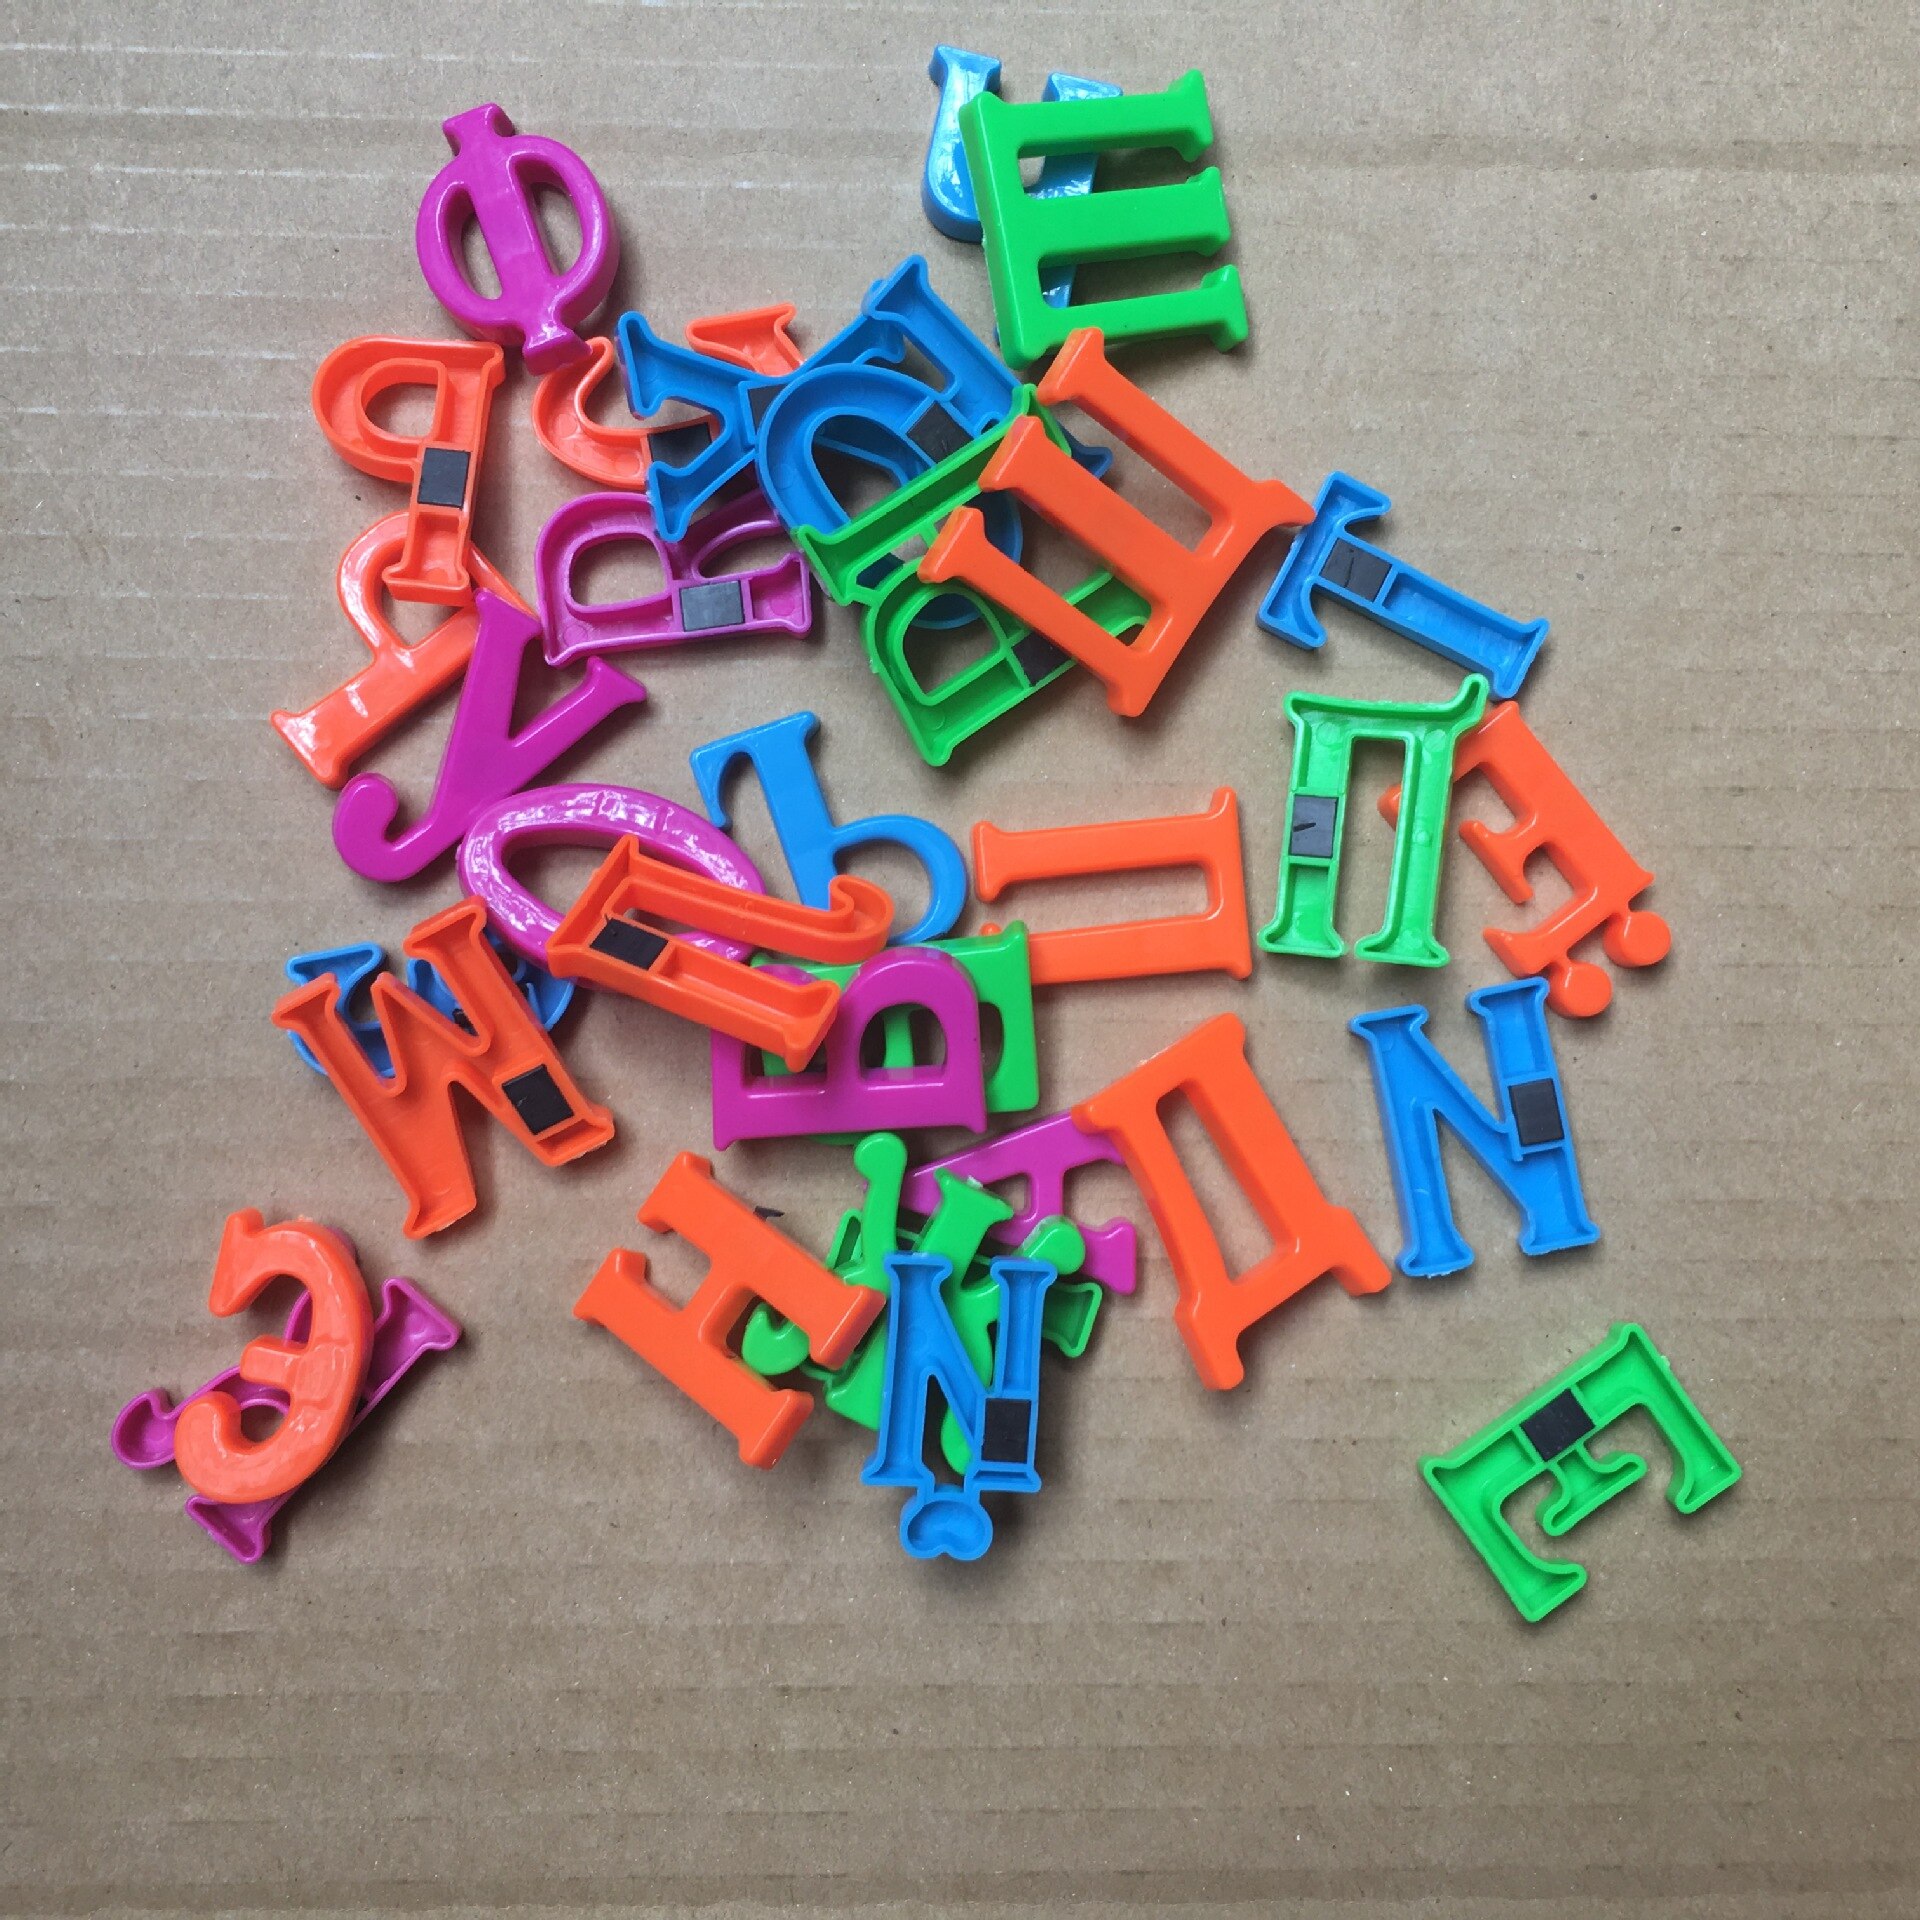 33 stk / sæt magnetiske russiske bogstaver læringsmateriale russisk alfabet brev magnetisk barn pædagogisk legetøj køleskabsmagnet